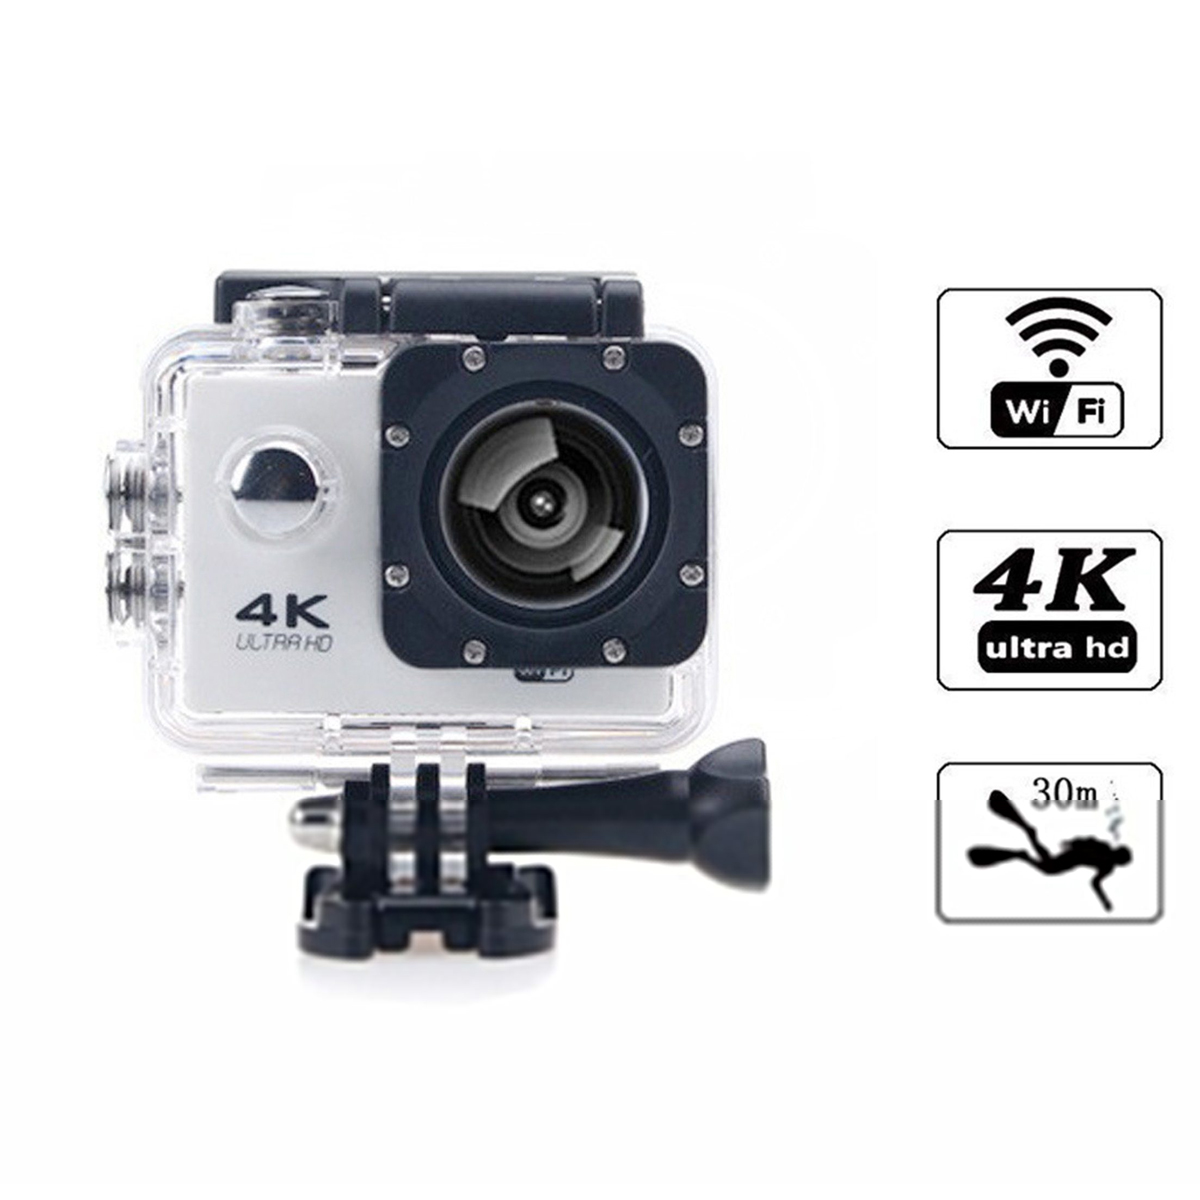 KINSI HD-Kameras,4K-Sportkameras,Unterwasserkameras,30m wasserdicht,WiFi-Synchronisation Action-Kamera